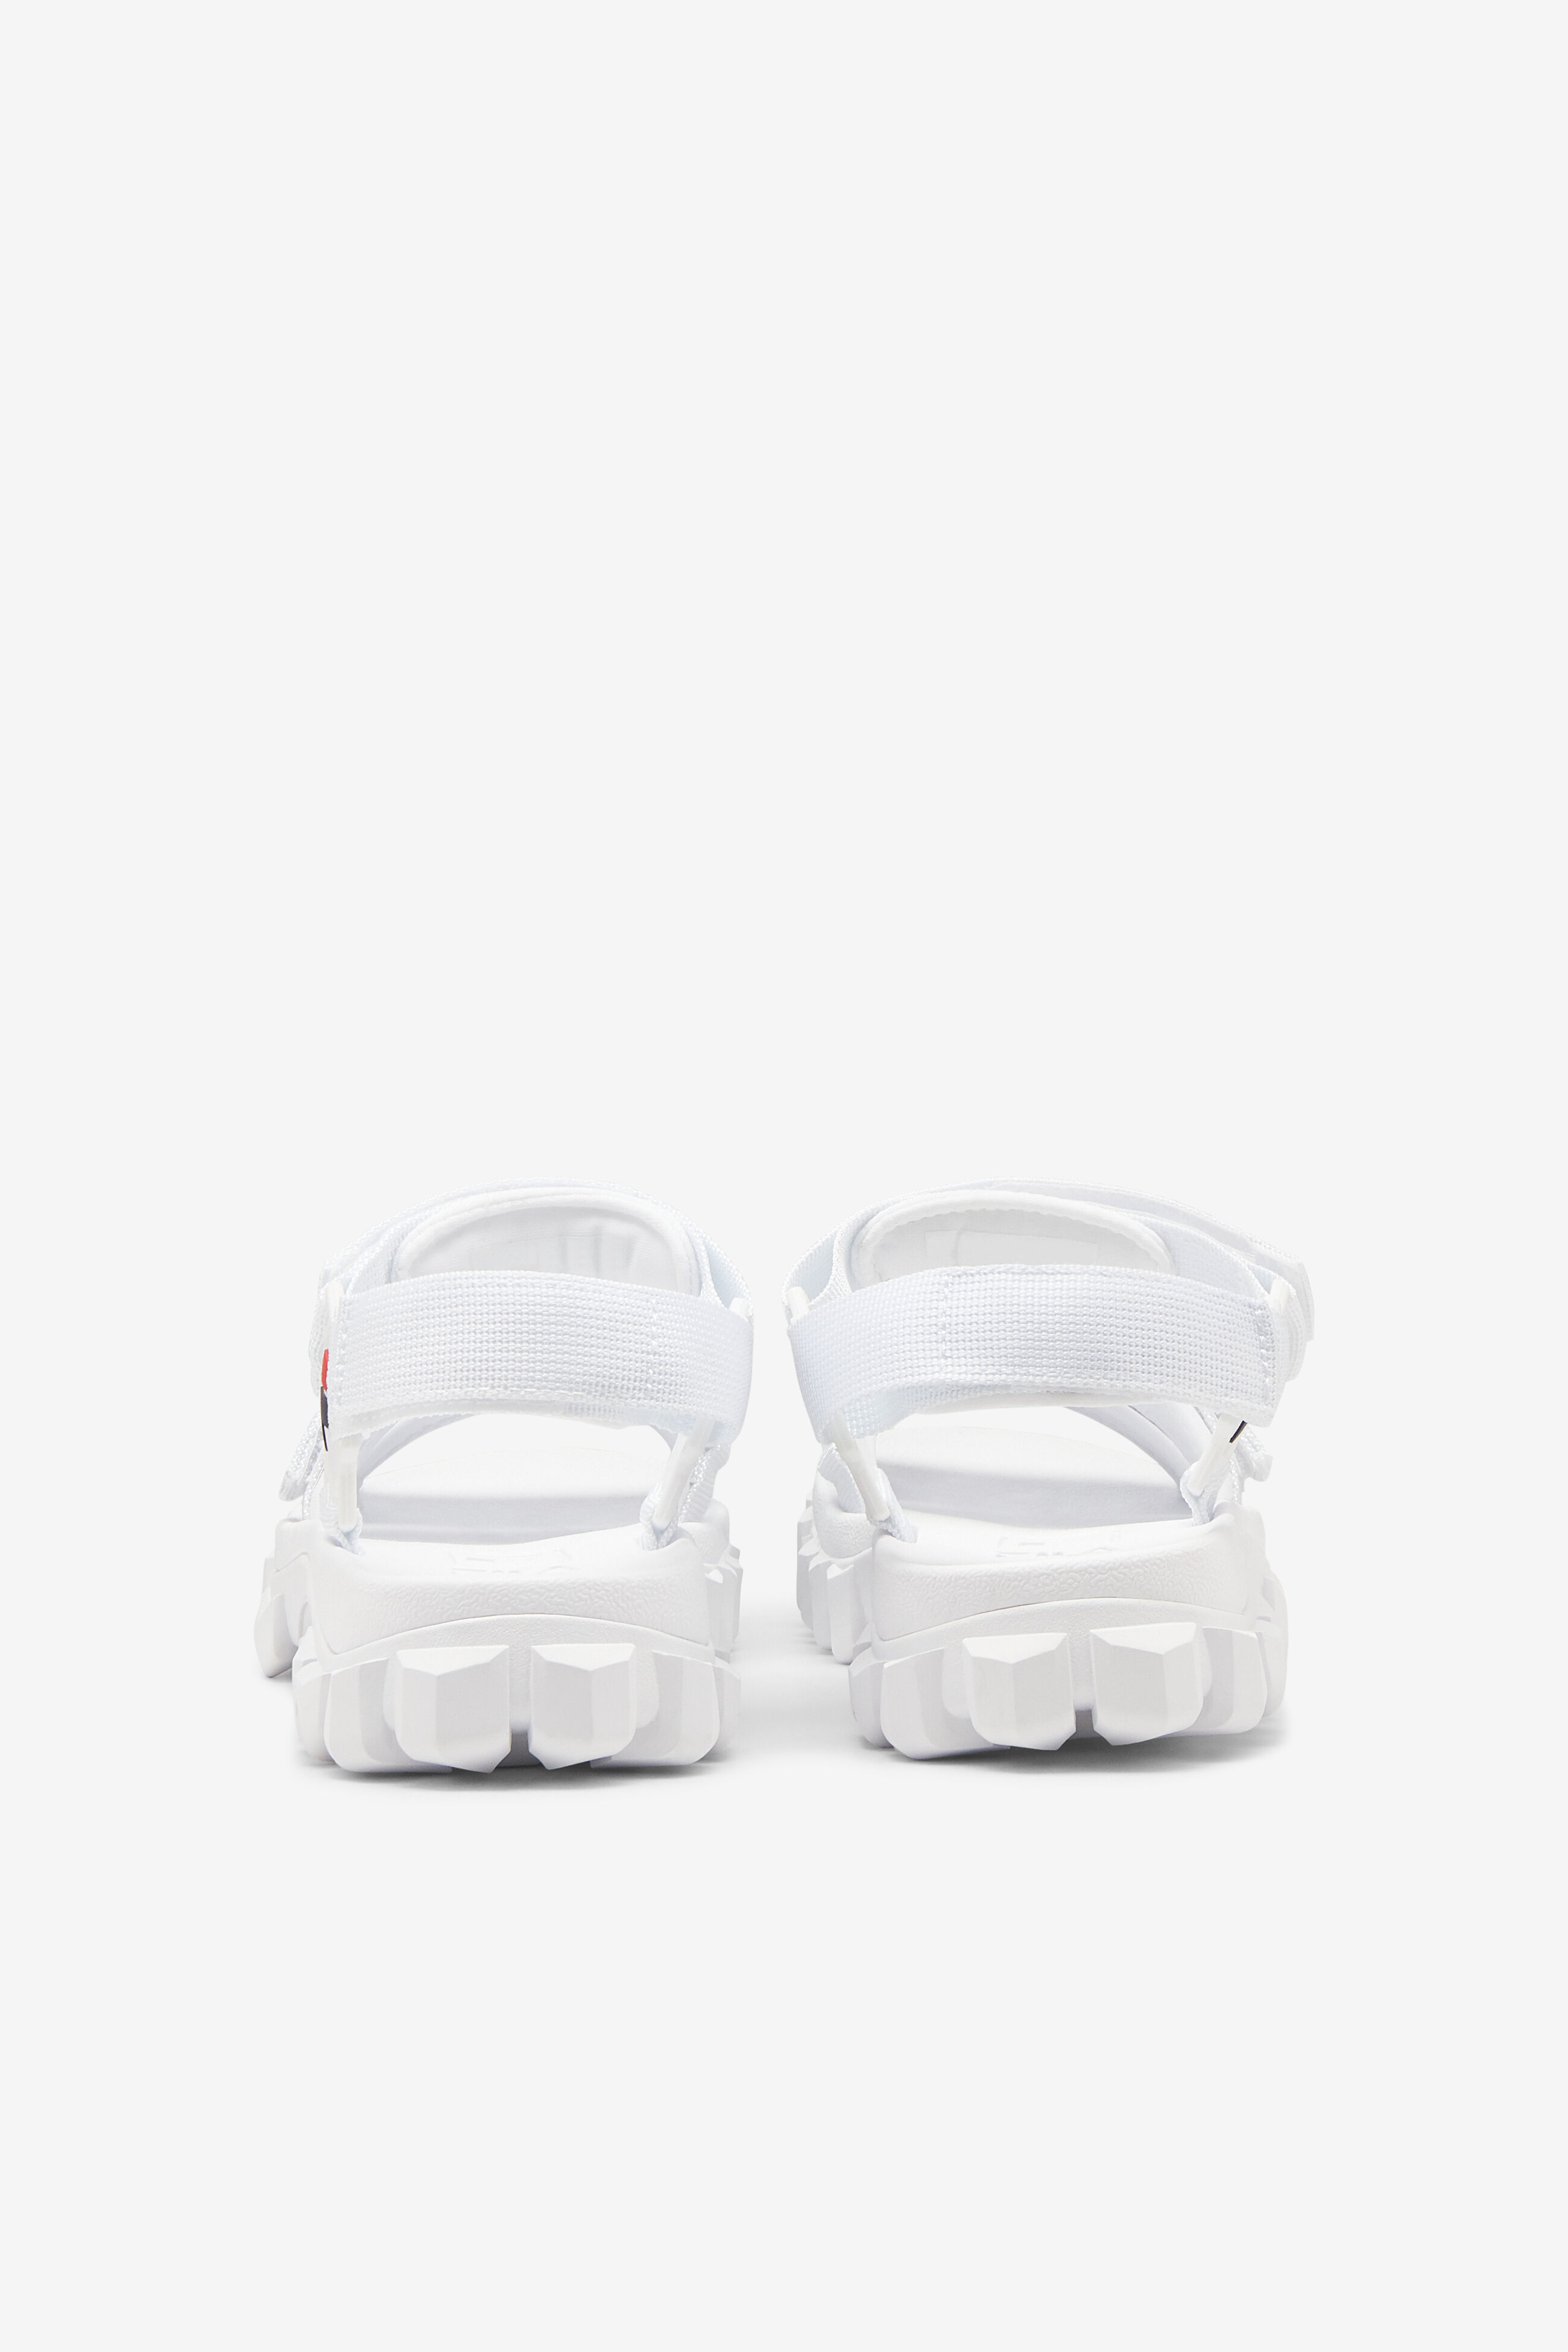 Fila Beige Sandals for Women | Mercari